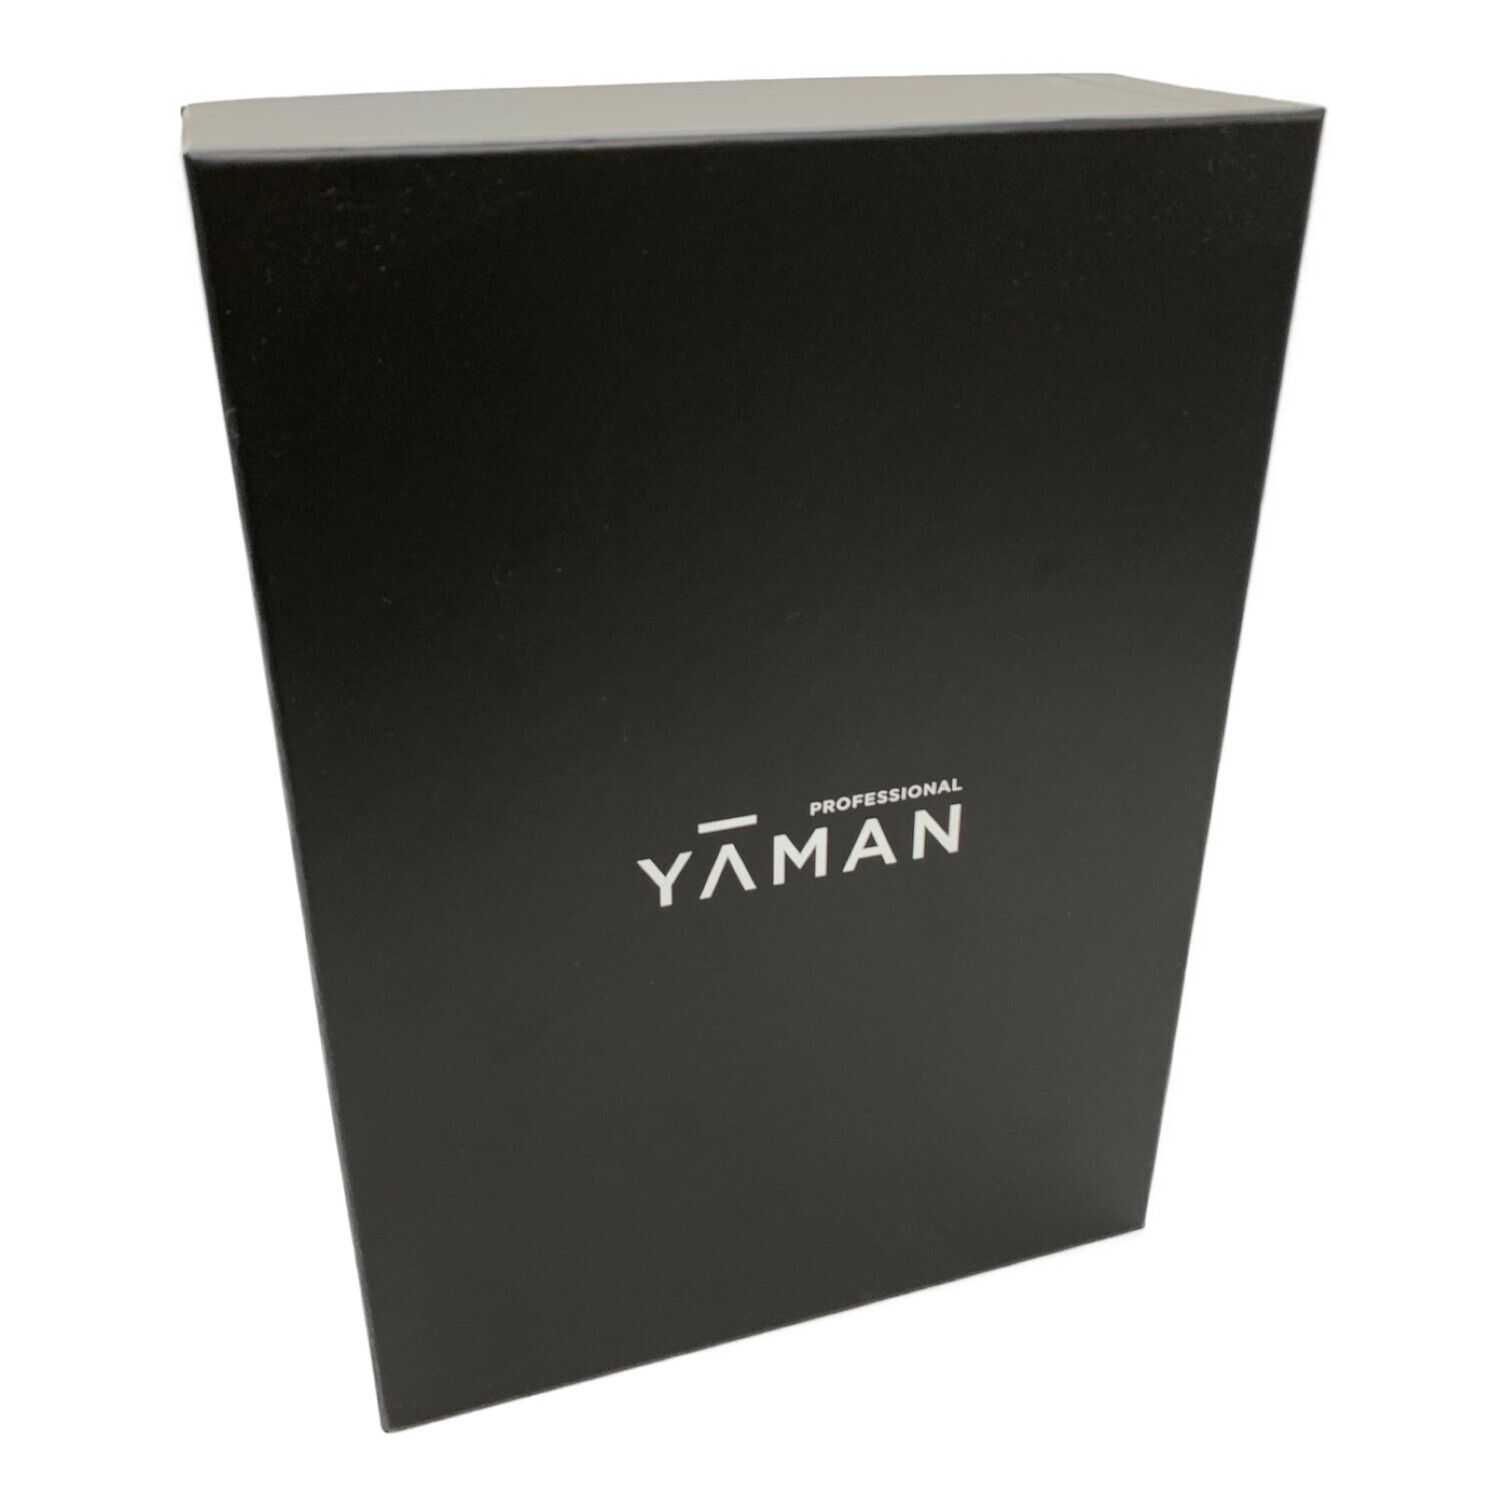 YAMAN (ヤーマン) ヴェーダスカルプブラシ BS for Salon PSM-110B ...